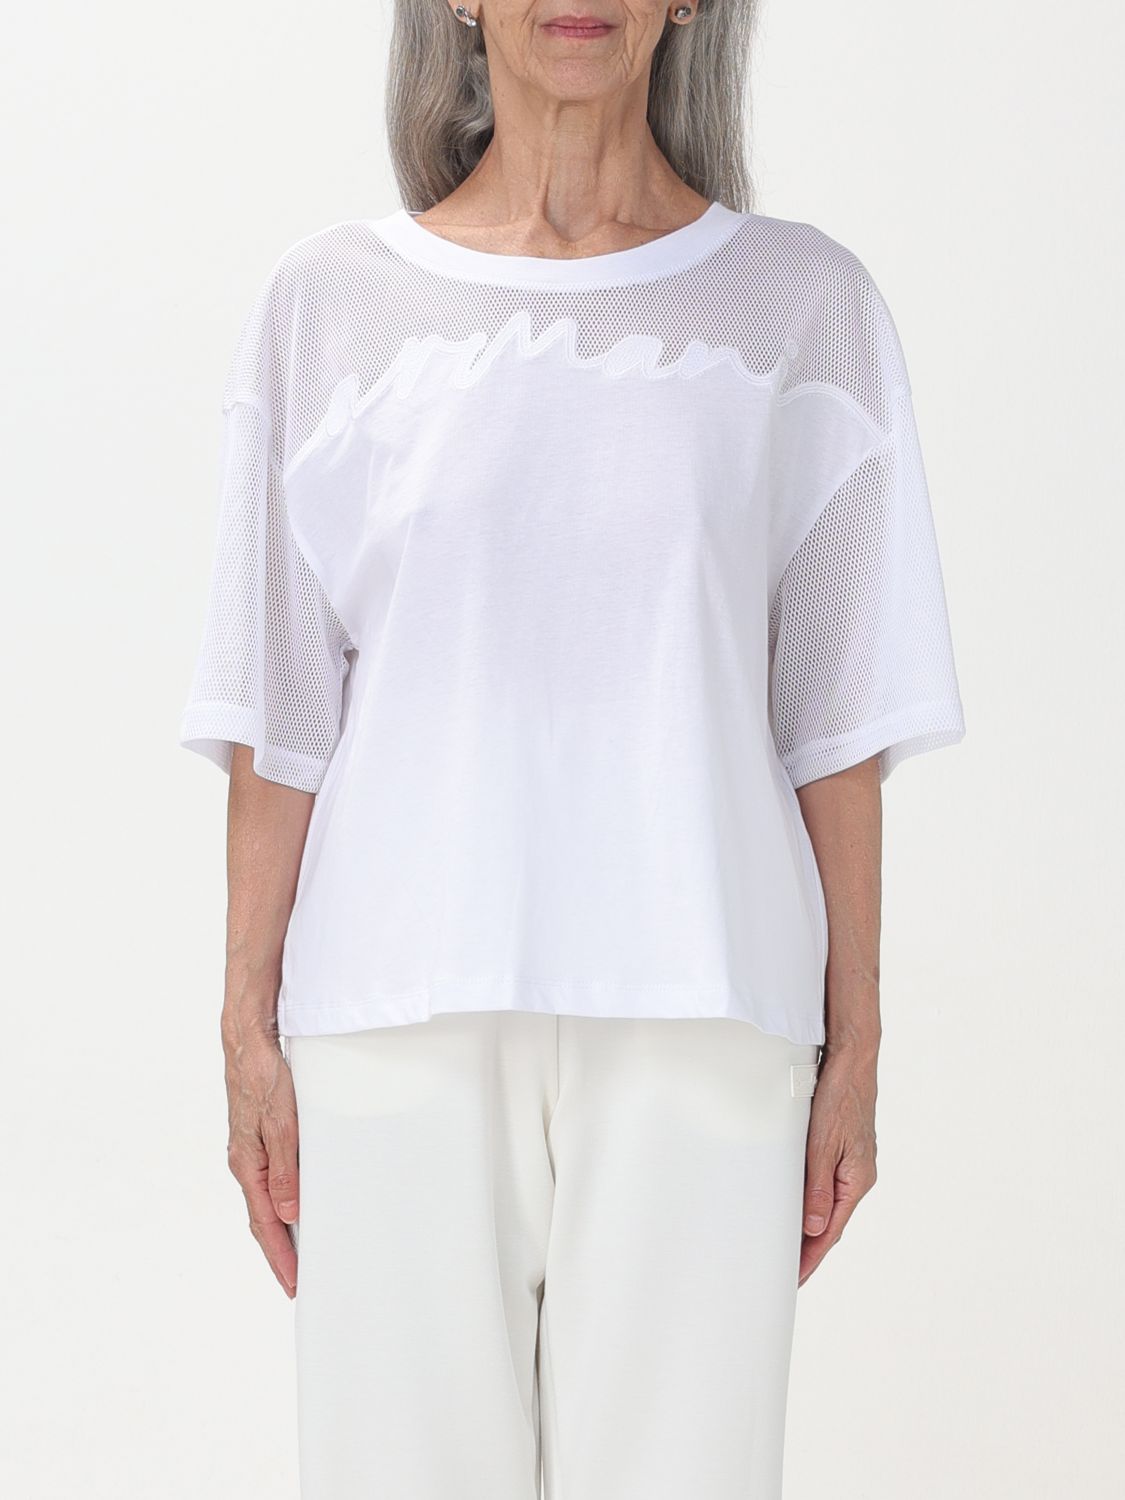 Armani Exchange T-shirt  Woman Color White